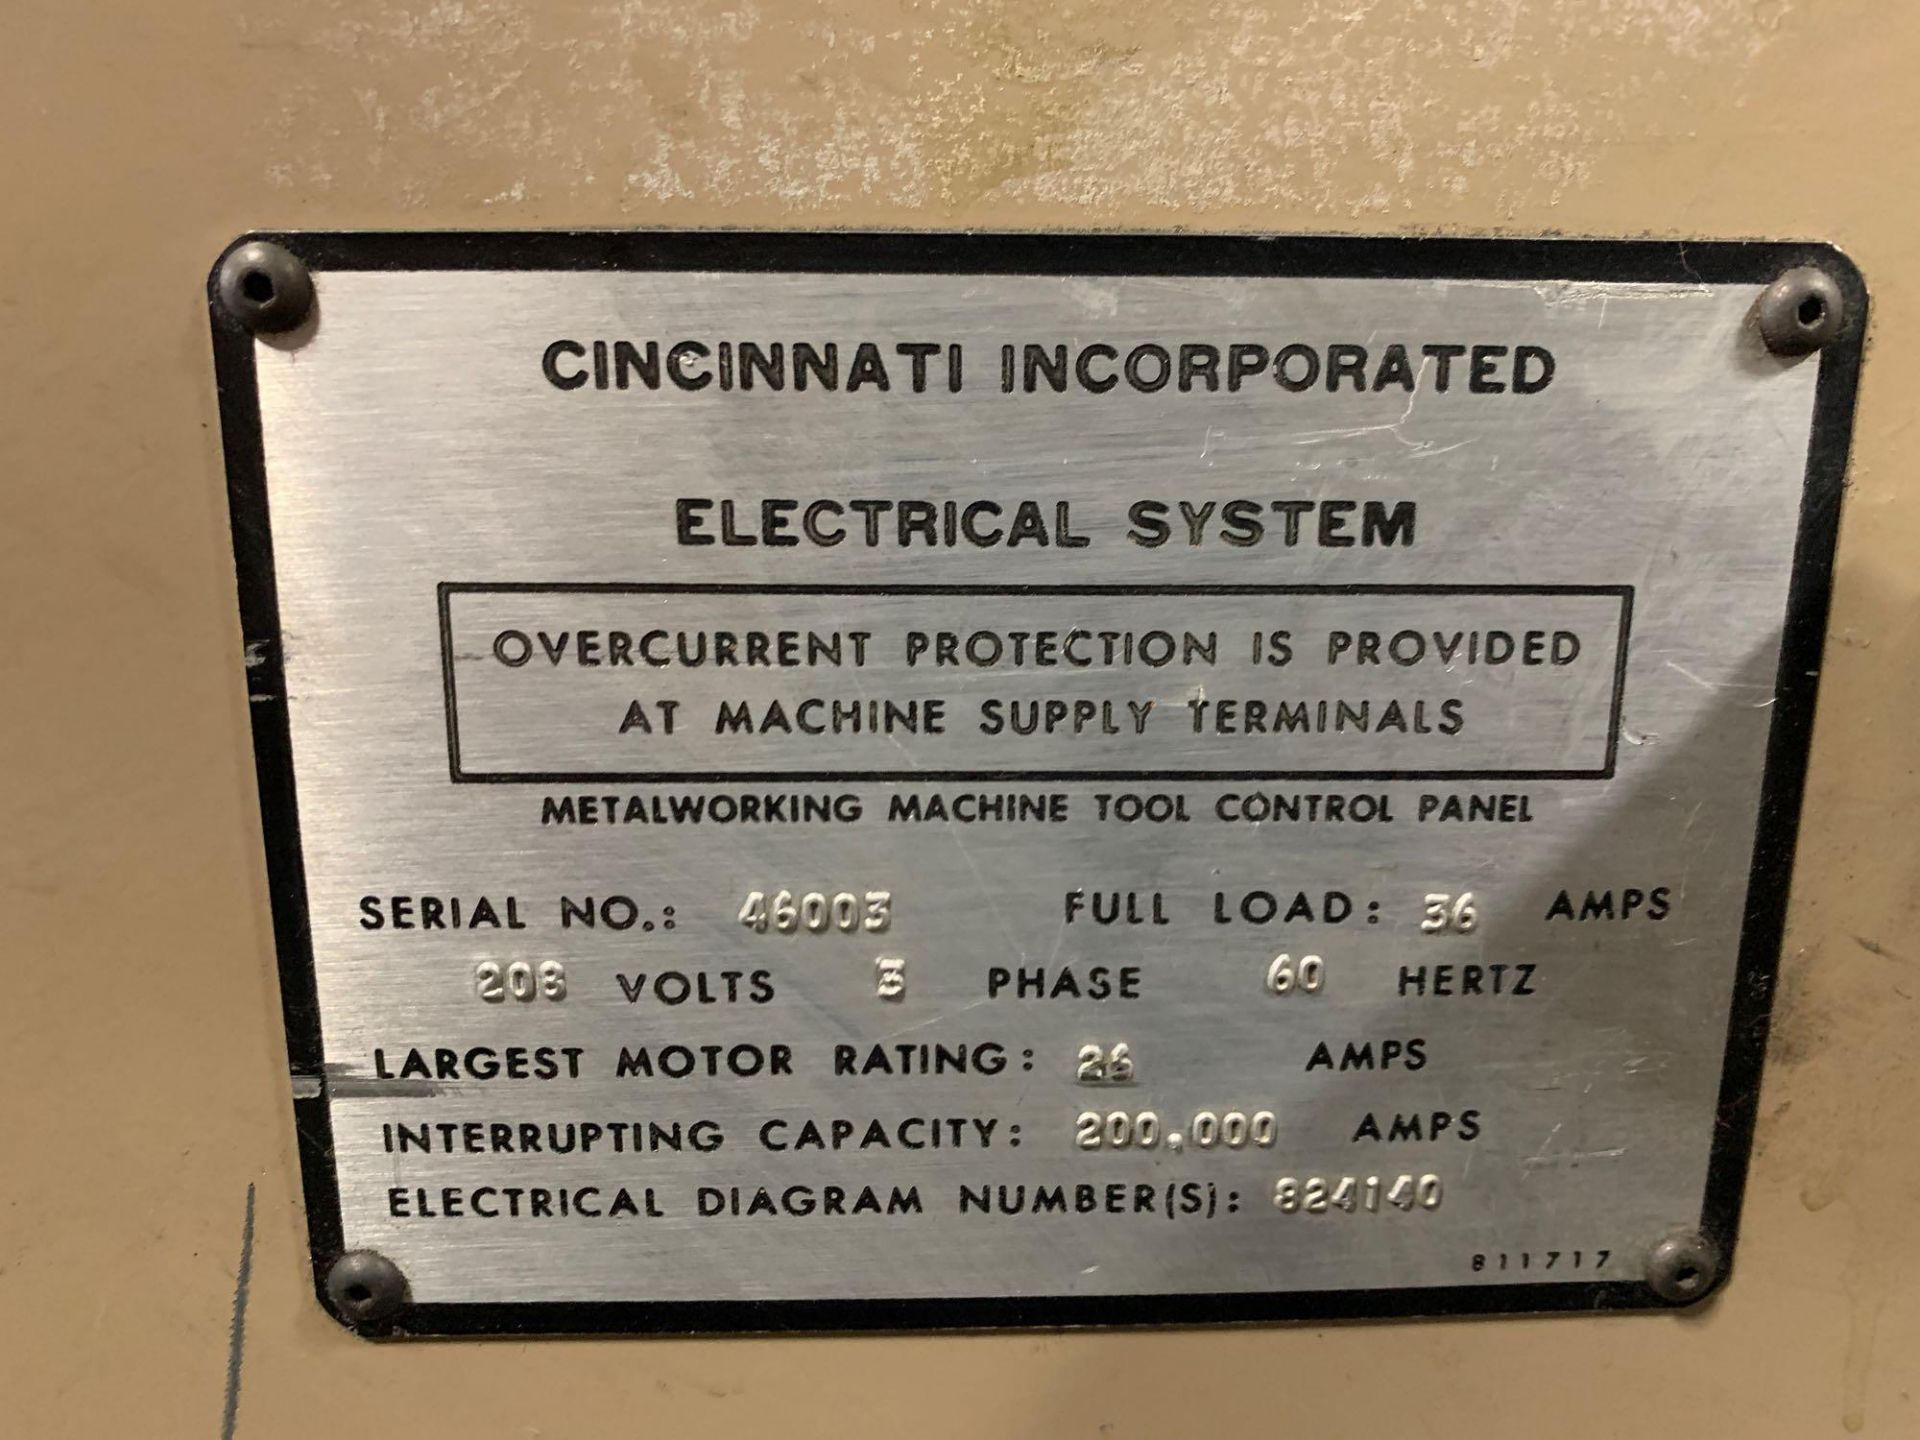 1990 Cincinnati Model 2CC10 Mechanical Power Squaring Shear Serial Number: 46003 - Image 20 of 28